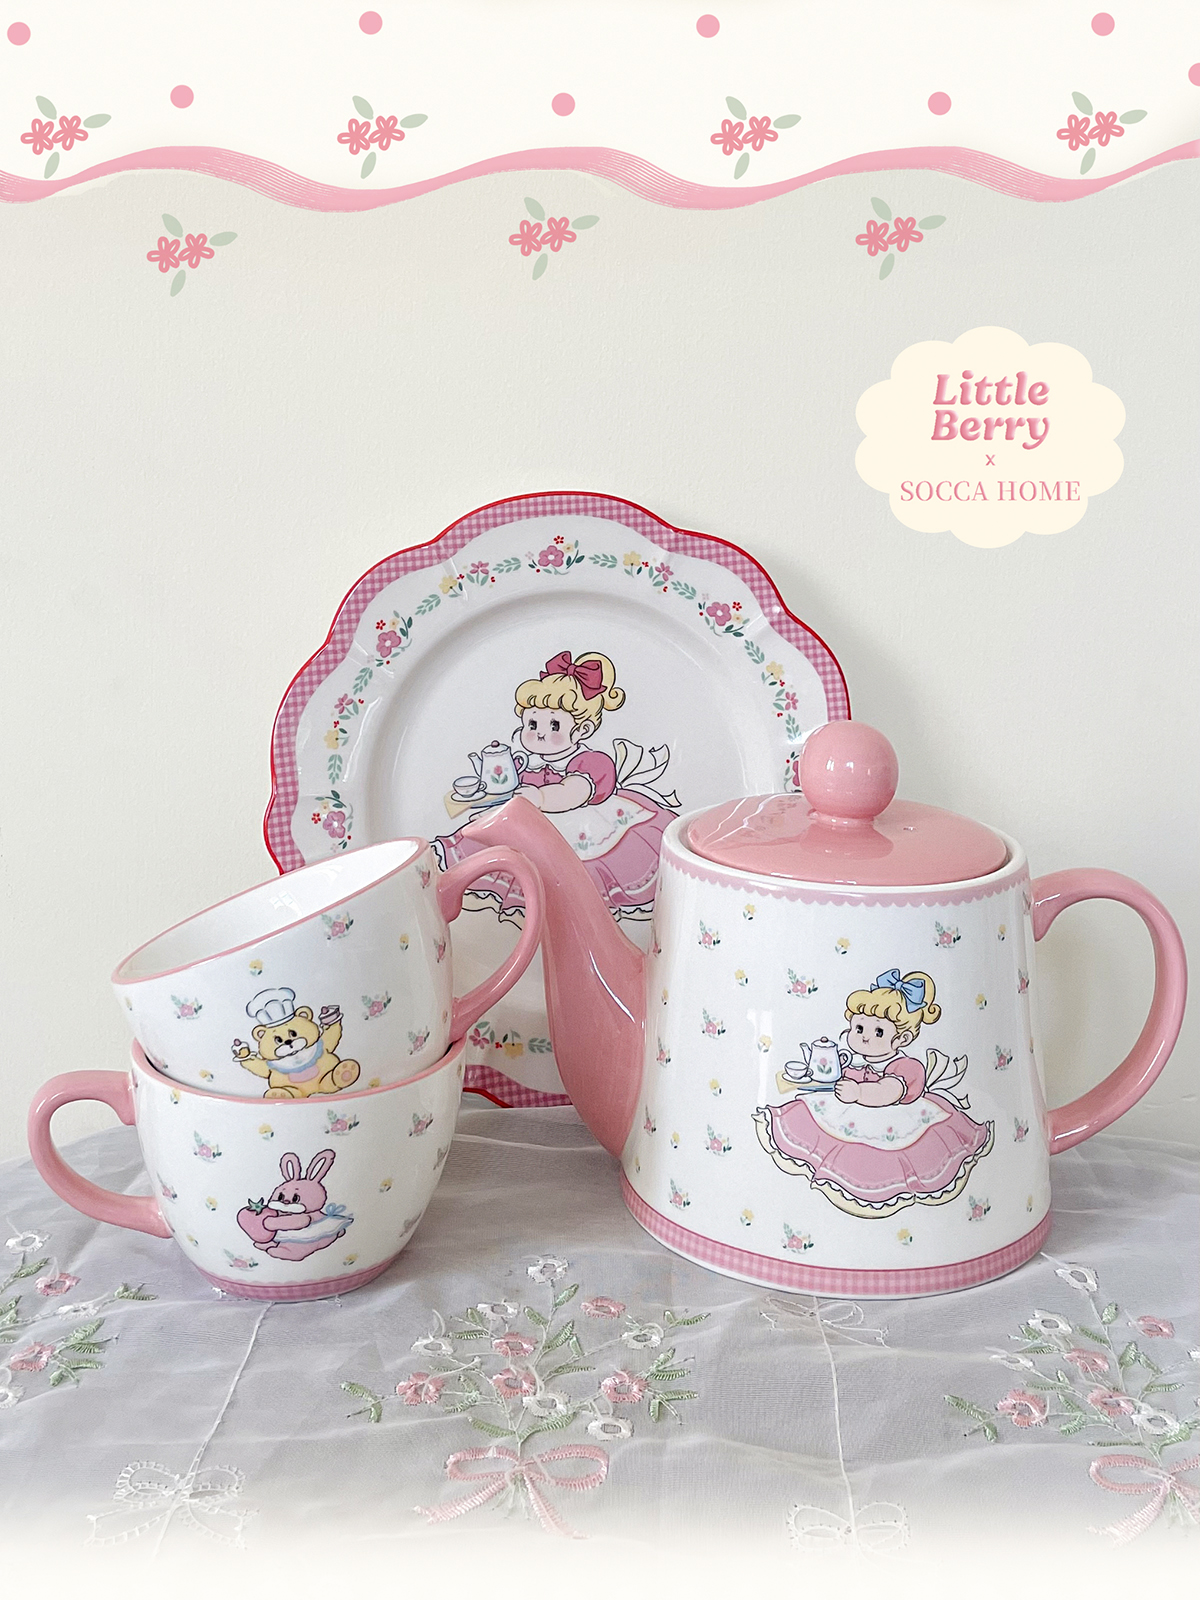 聖誕禮物禮盒粉色可愛少女陶瓷胖茶壺2杯子套裝組合禮品下午茶3件套裝